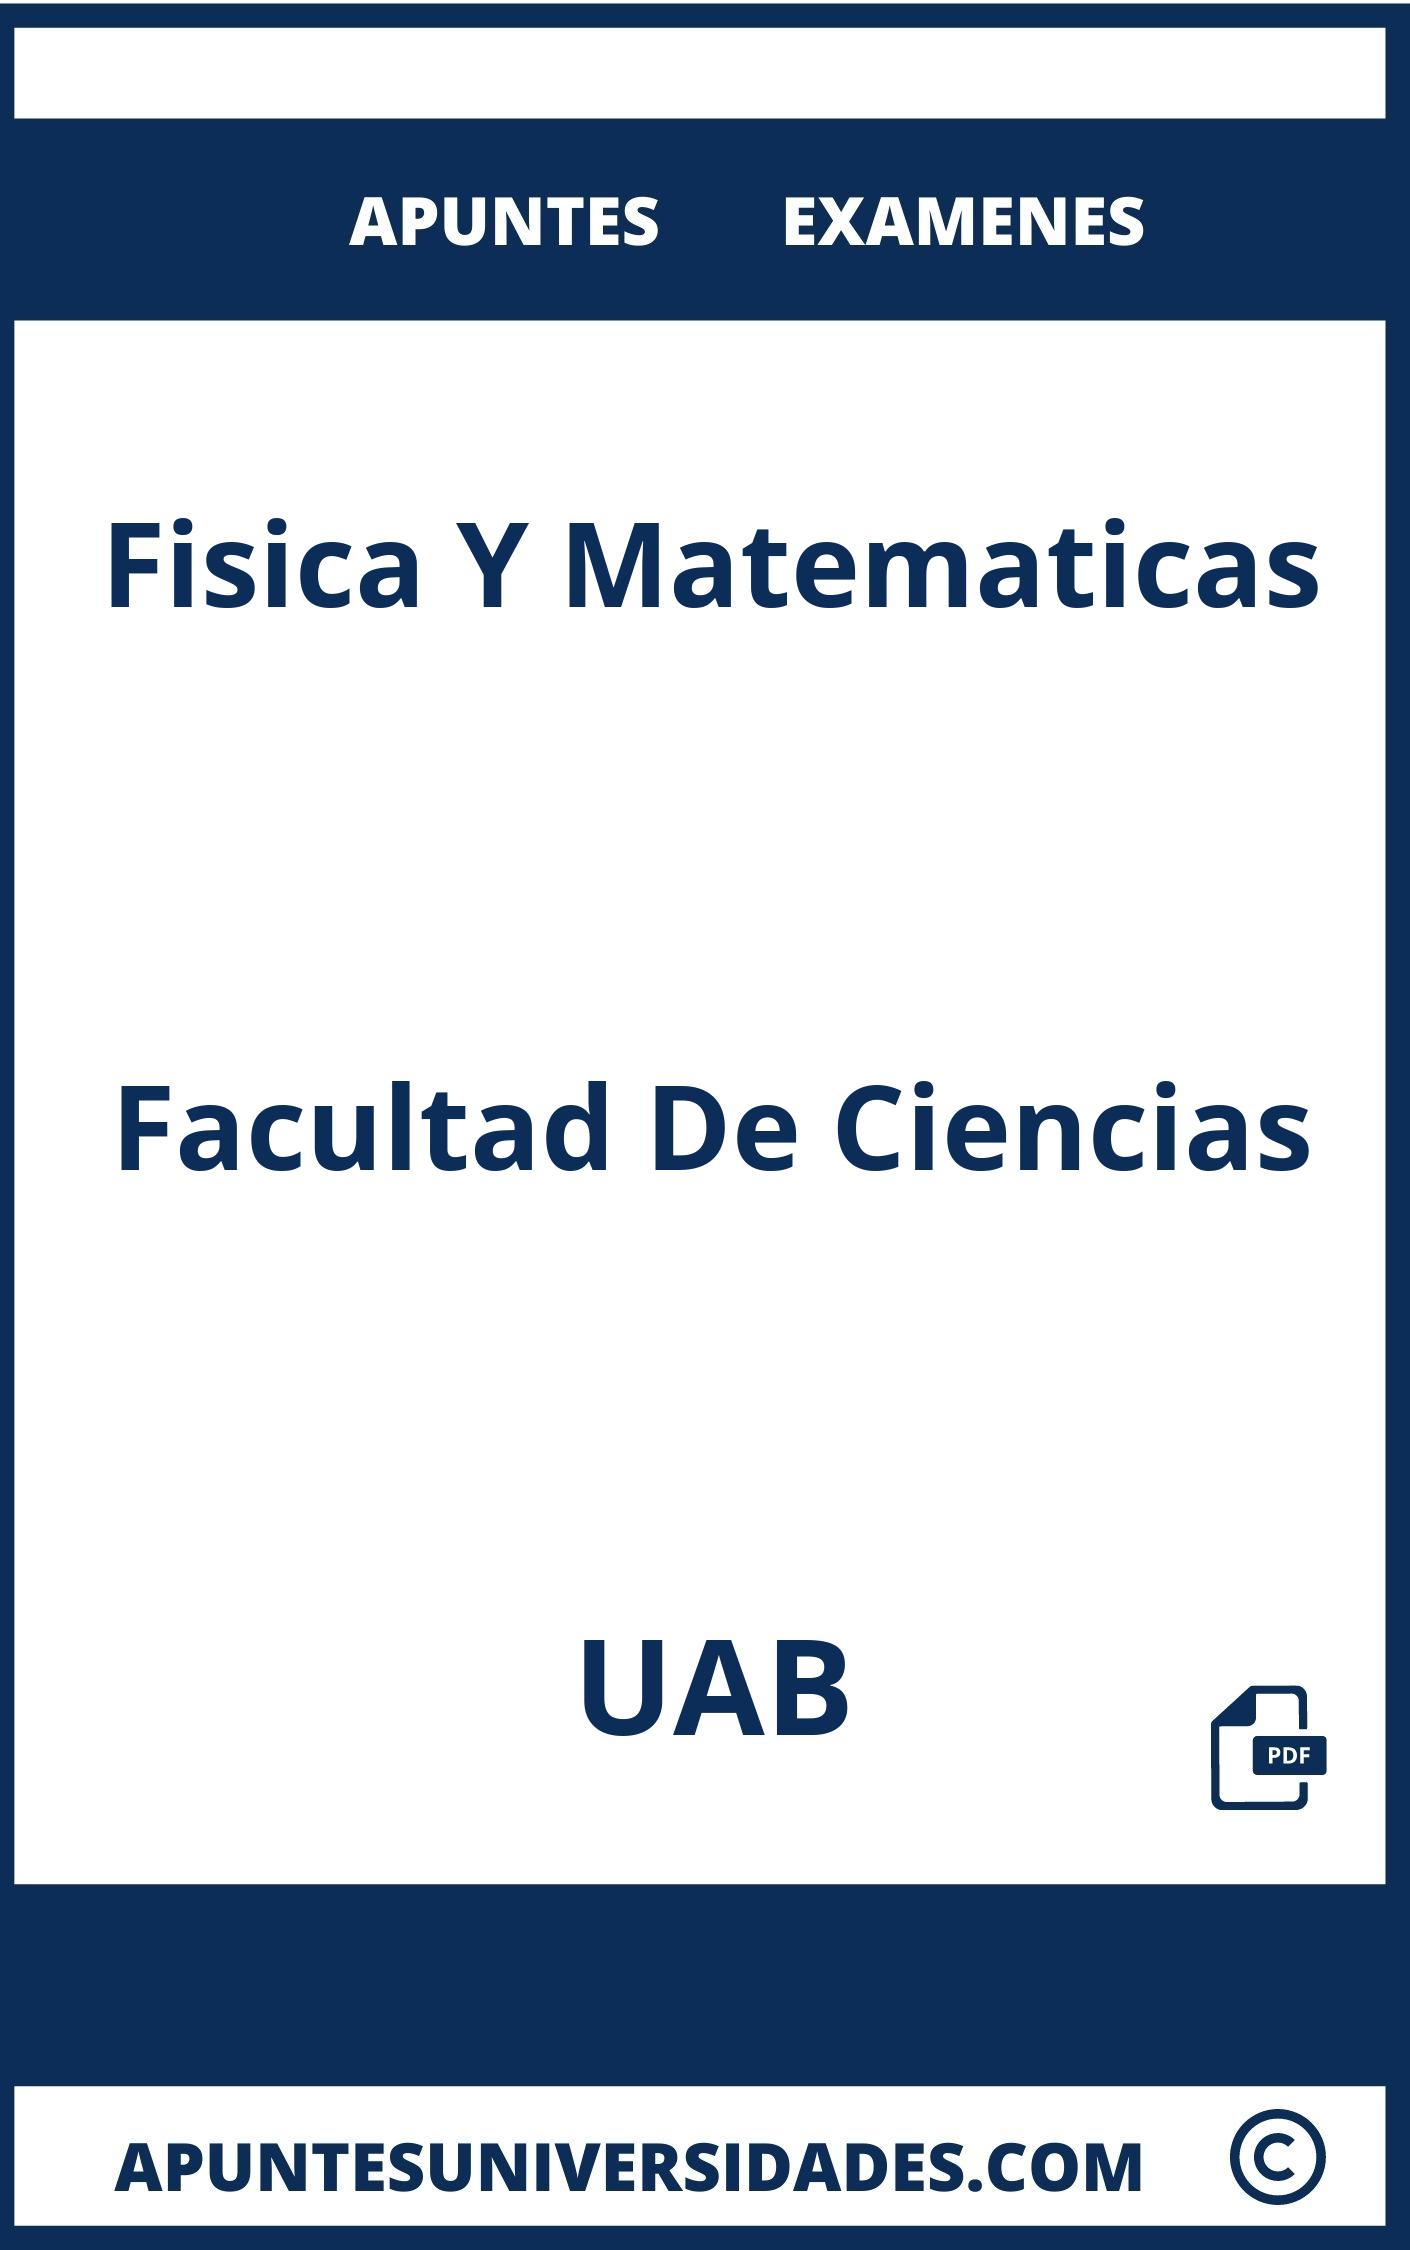 Apuntes y Examenes Fisica Y Matematicas UAB